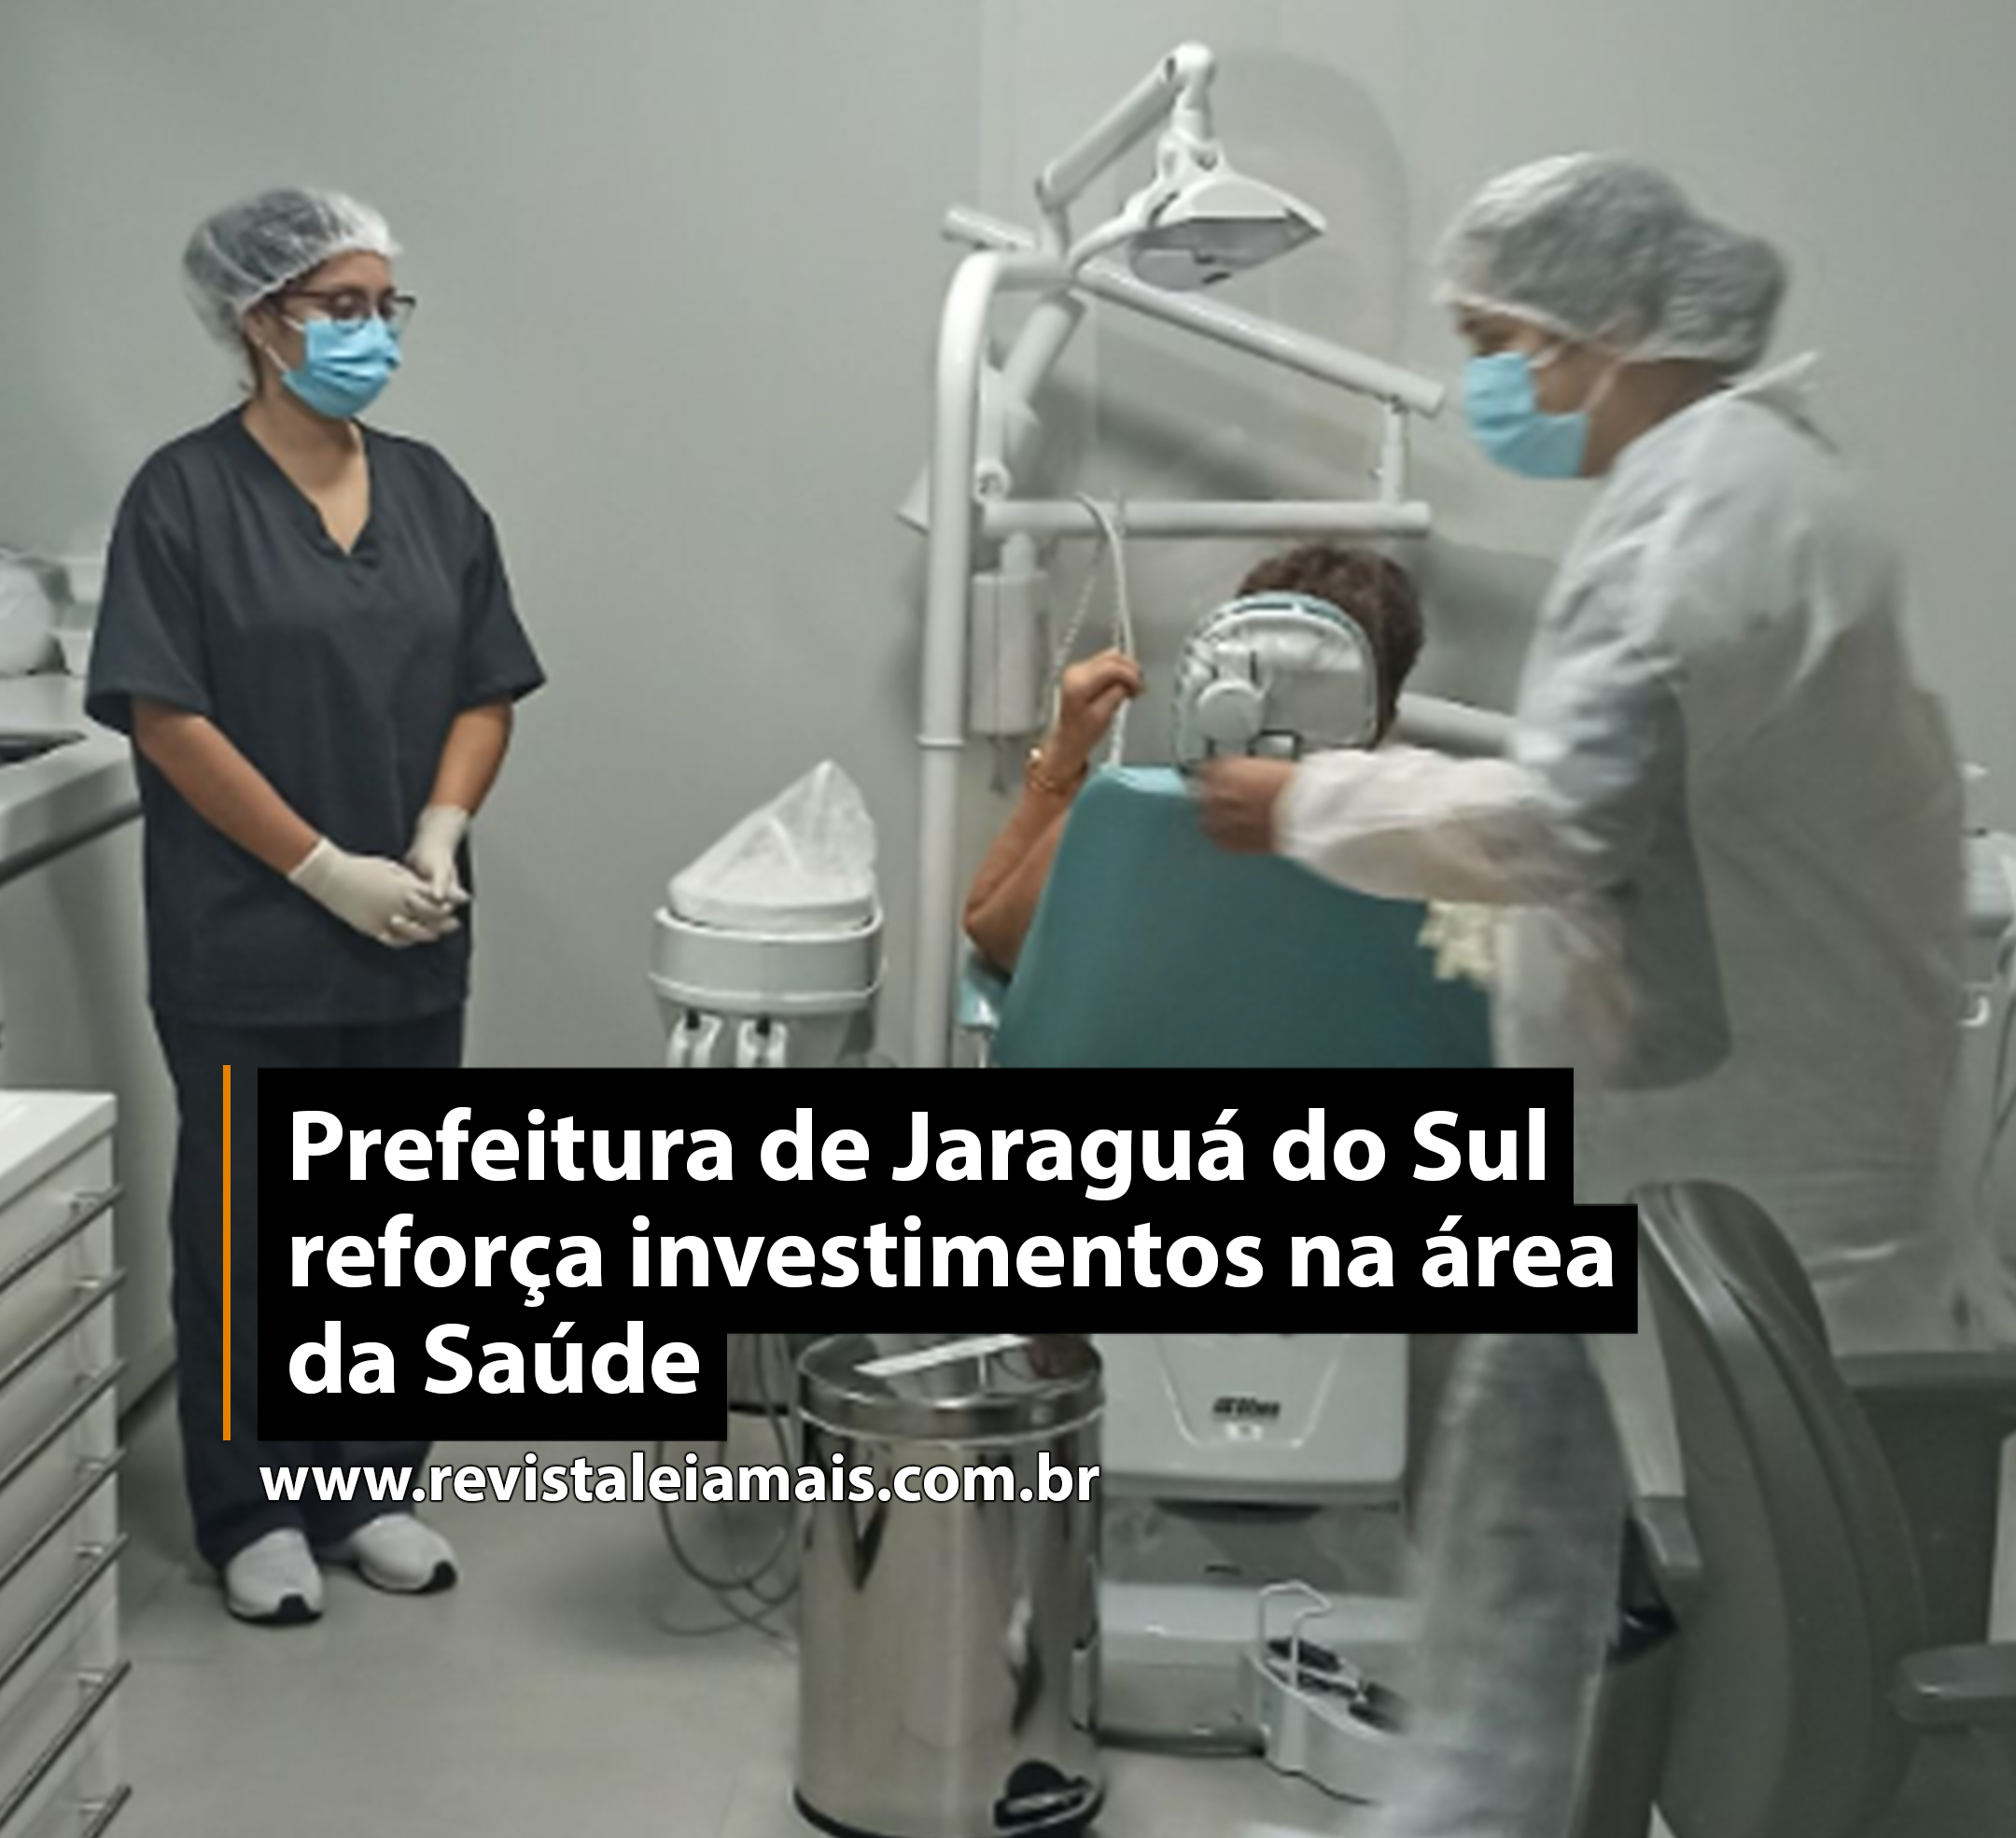 Prefeitura de Jaraguá do Sul reforça investimentos na área da Saúde